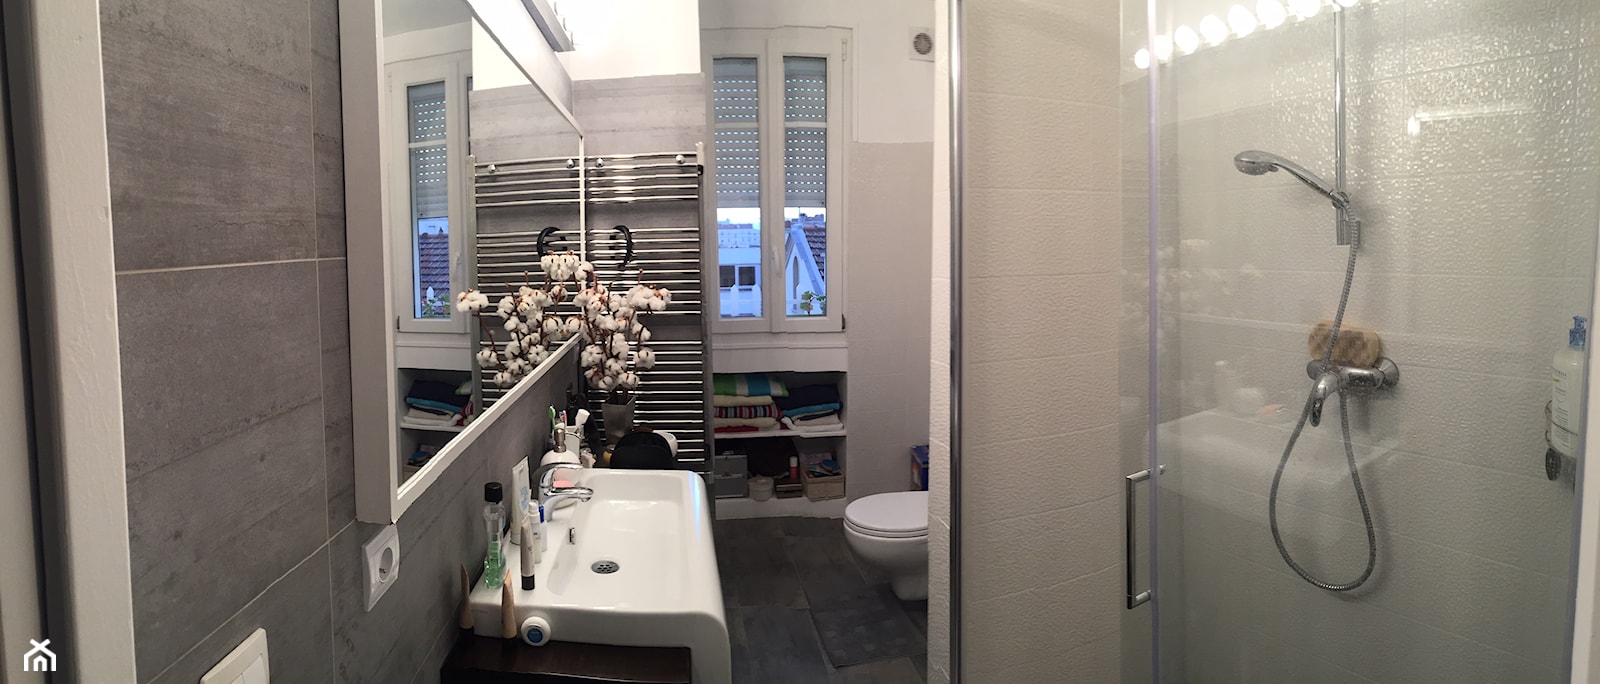 mini loft 45m2 - Mała łazienka, styl minimalistyczny - zdjęcie od eve07 - Homebook